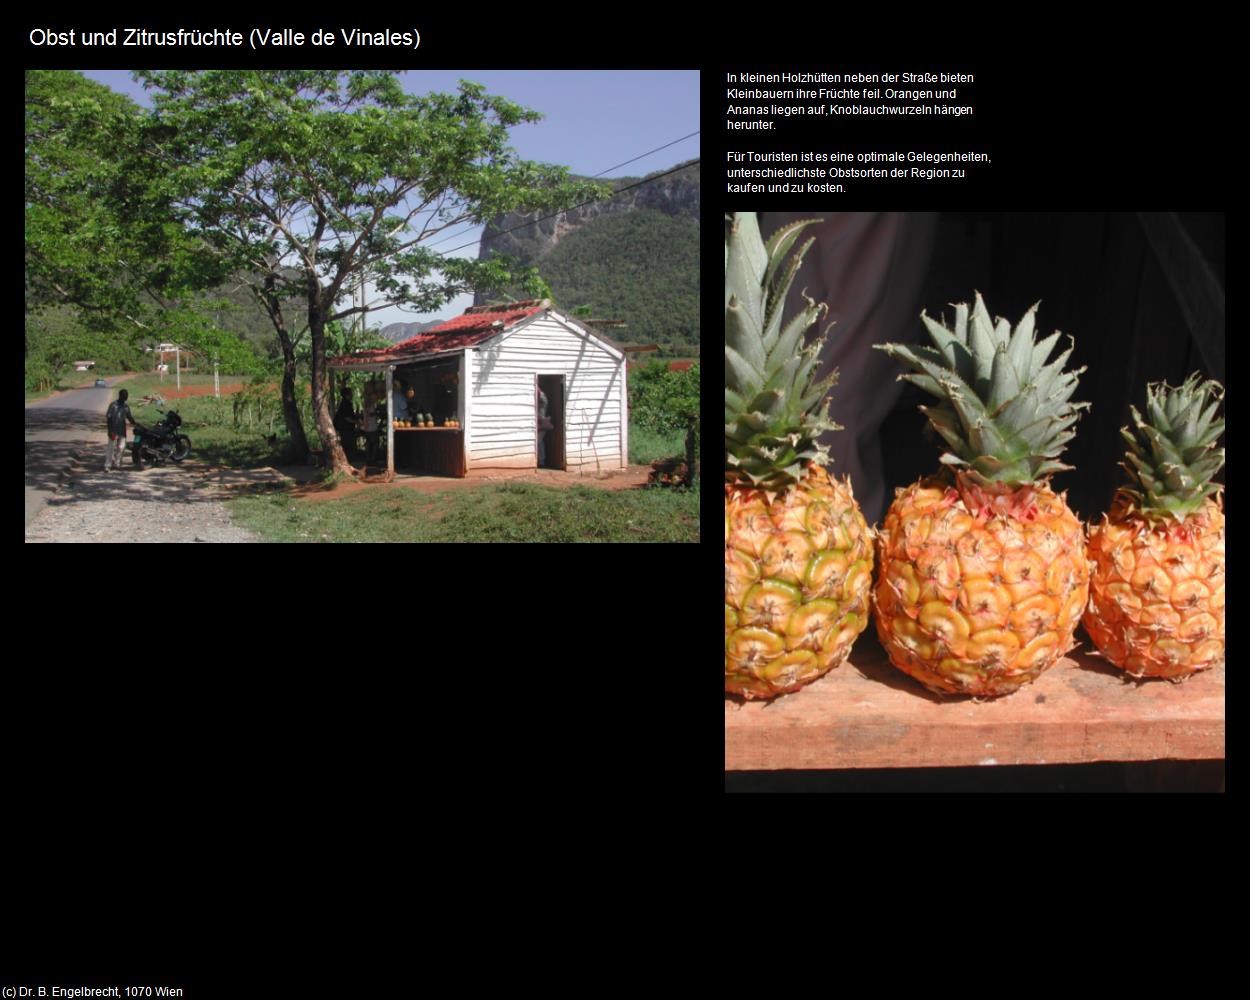 Obst und Zitrofrüchte (Valle de Vinales) in KUBA